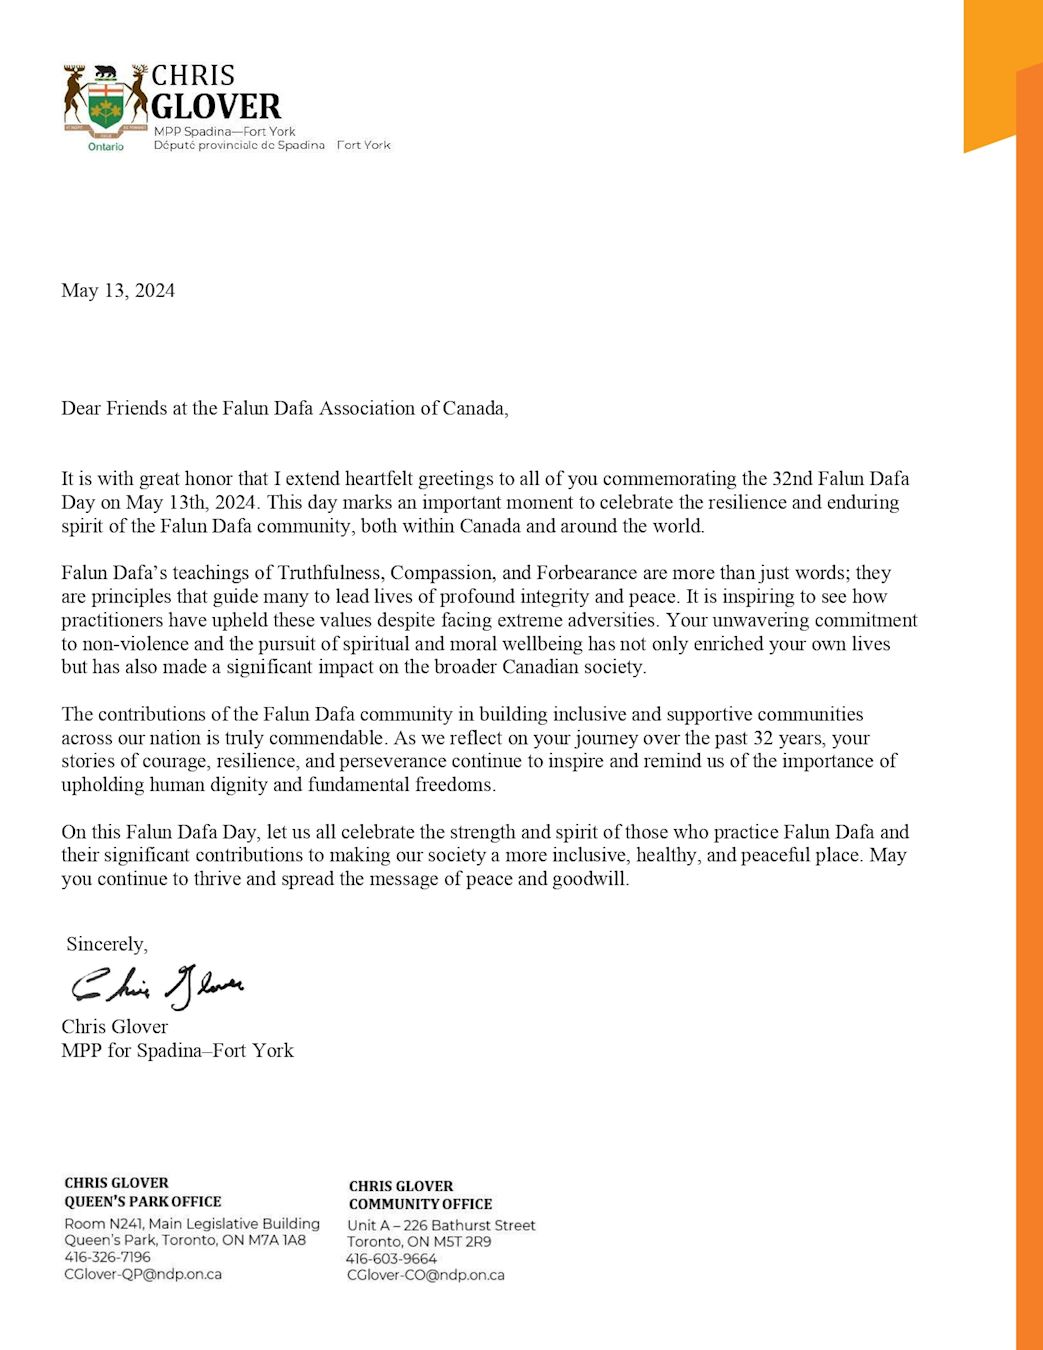 '图9：多伦多中区唐人街区省议员克里斯·格洛弗（Chris Glover）的贺信'